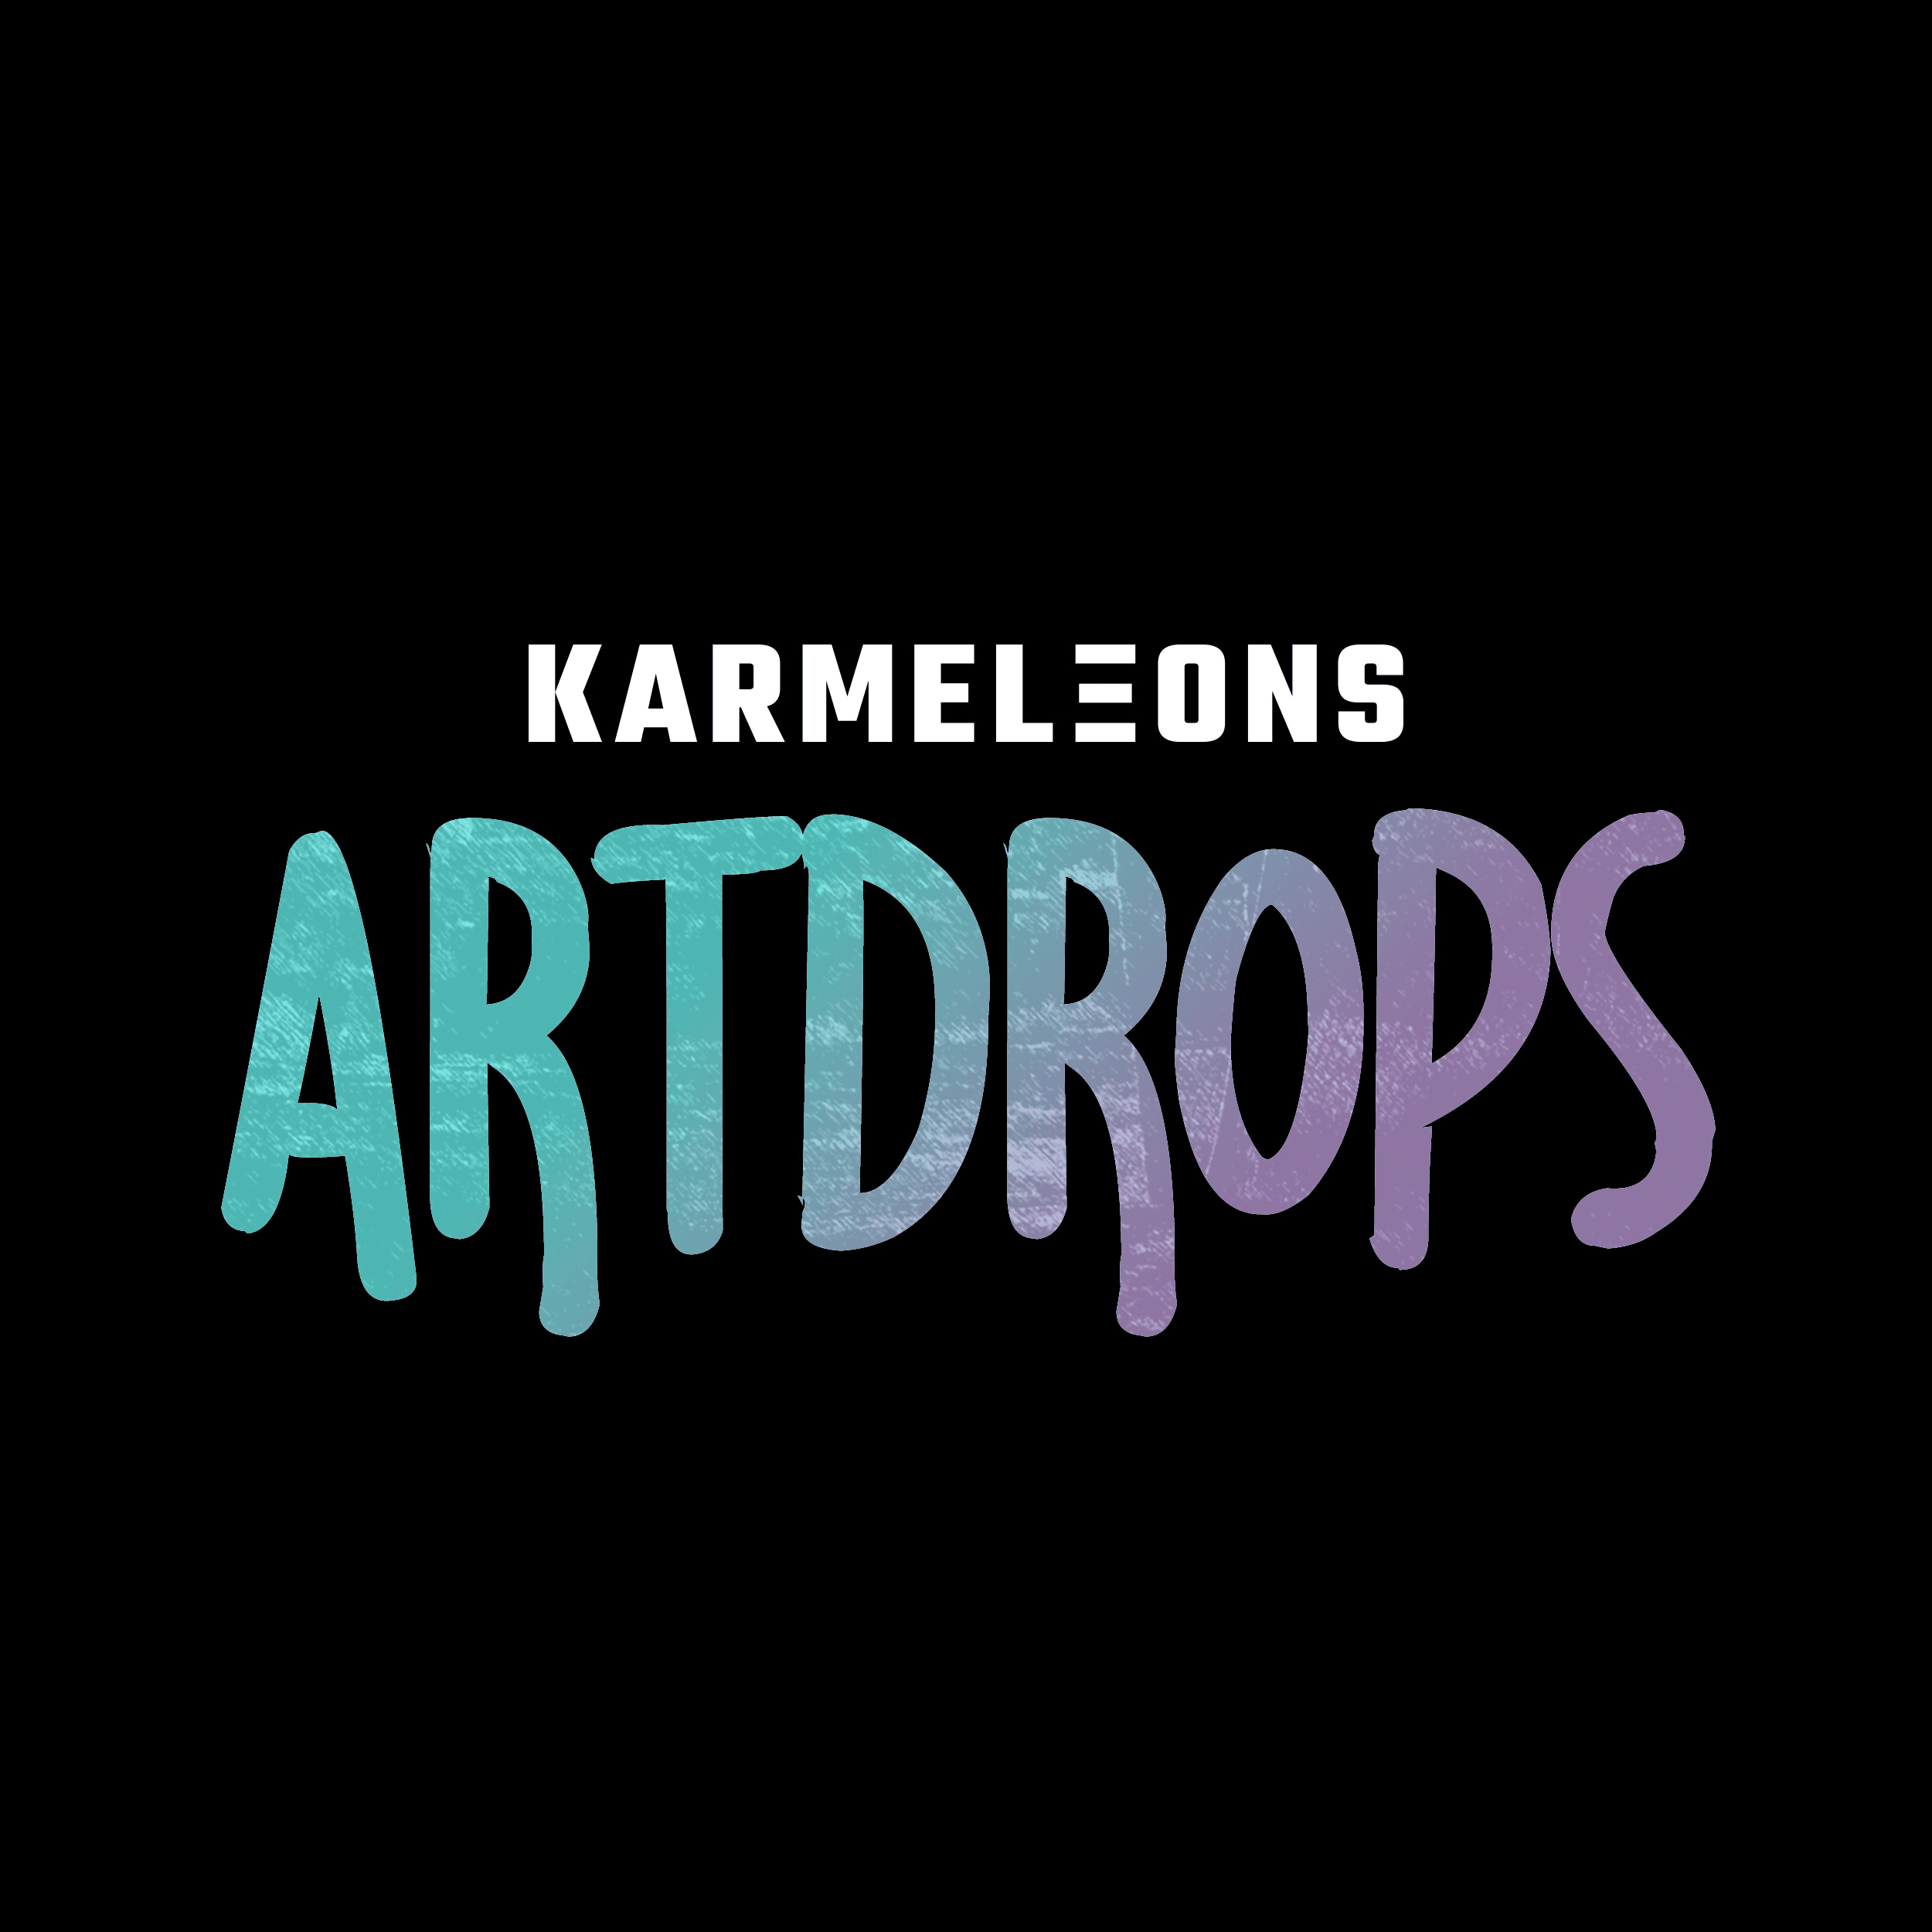 Karmeleons Artdrops